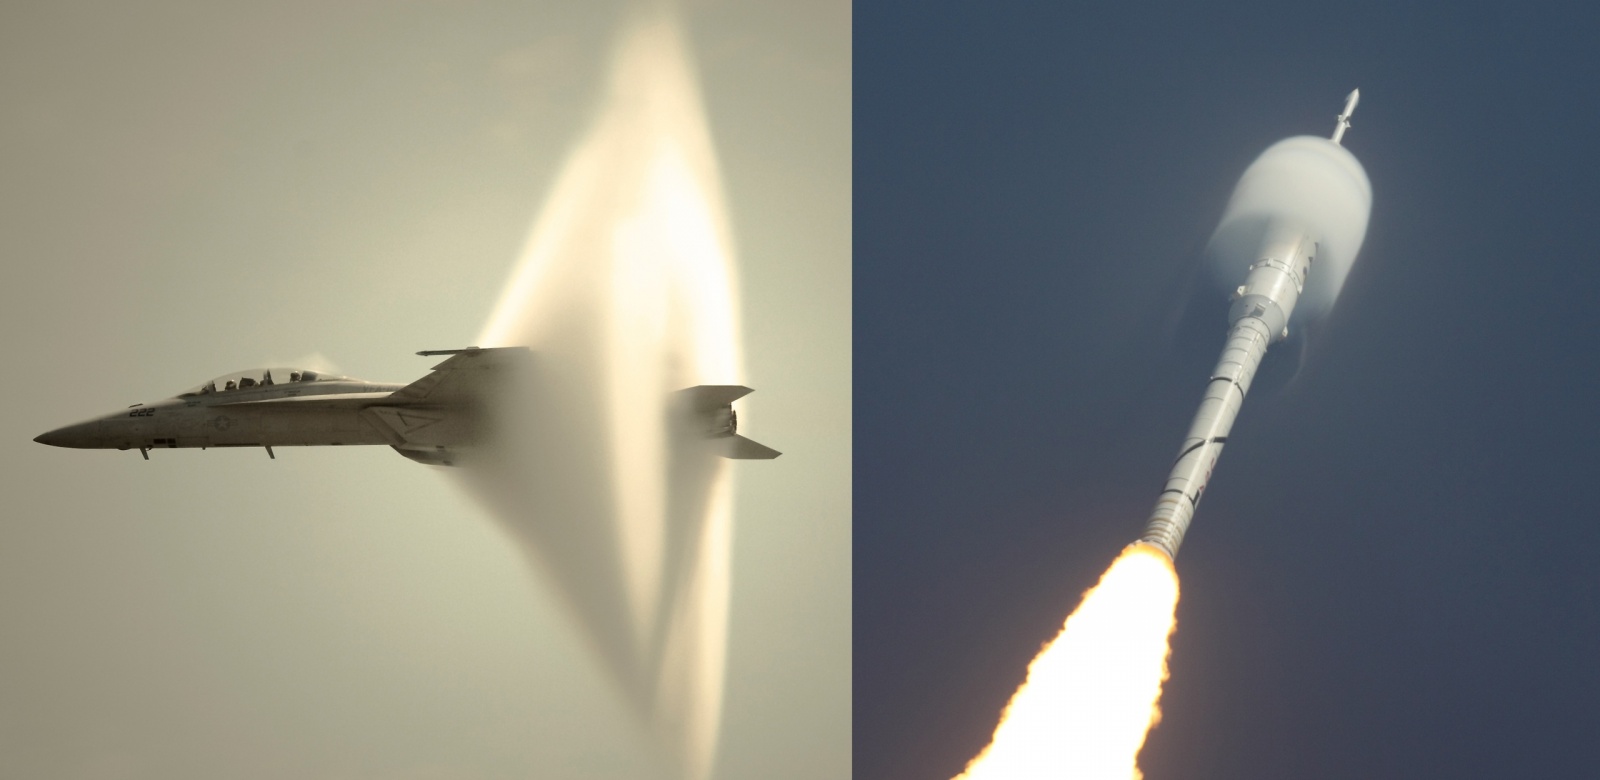 Слева - ударная волна сверхзвукового самолета, справа - ударная волна при переходе космической ракеты звукового барьера